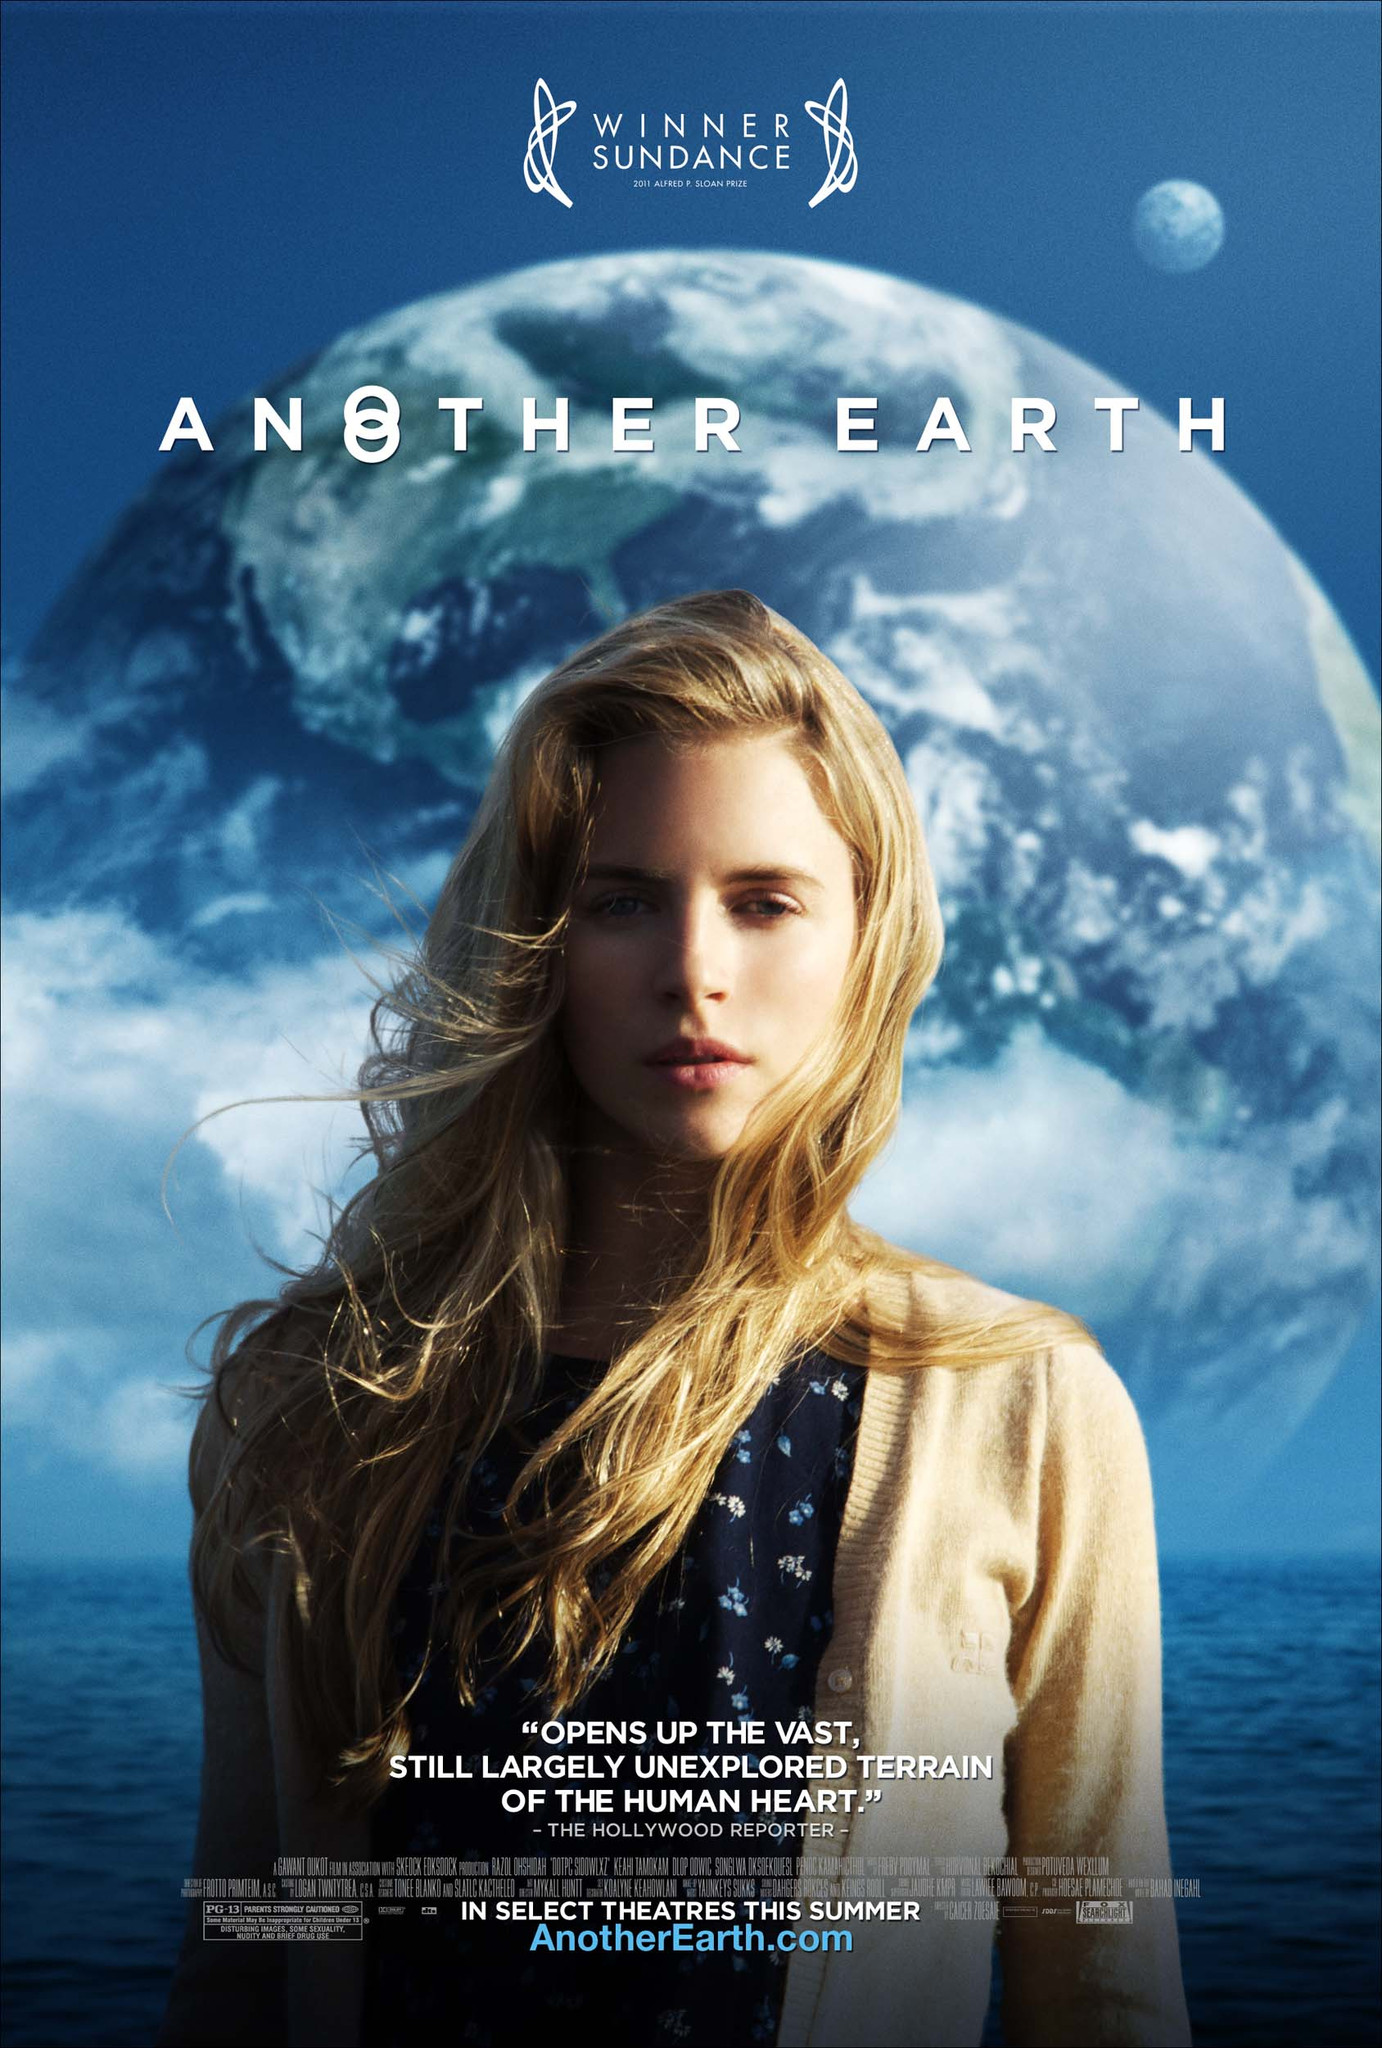 [另一个地球].Another.Earth.2011.BluRay.1080p.AVC.DTS-HD.MA.5.1-HDHome  28.4G-1.jpg